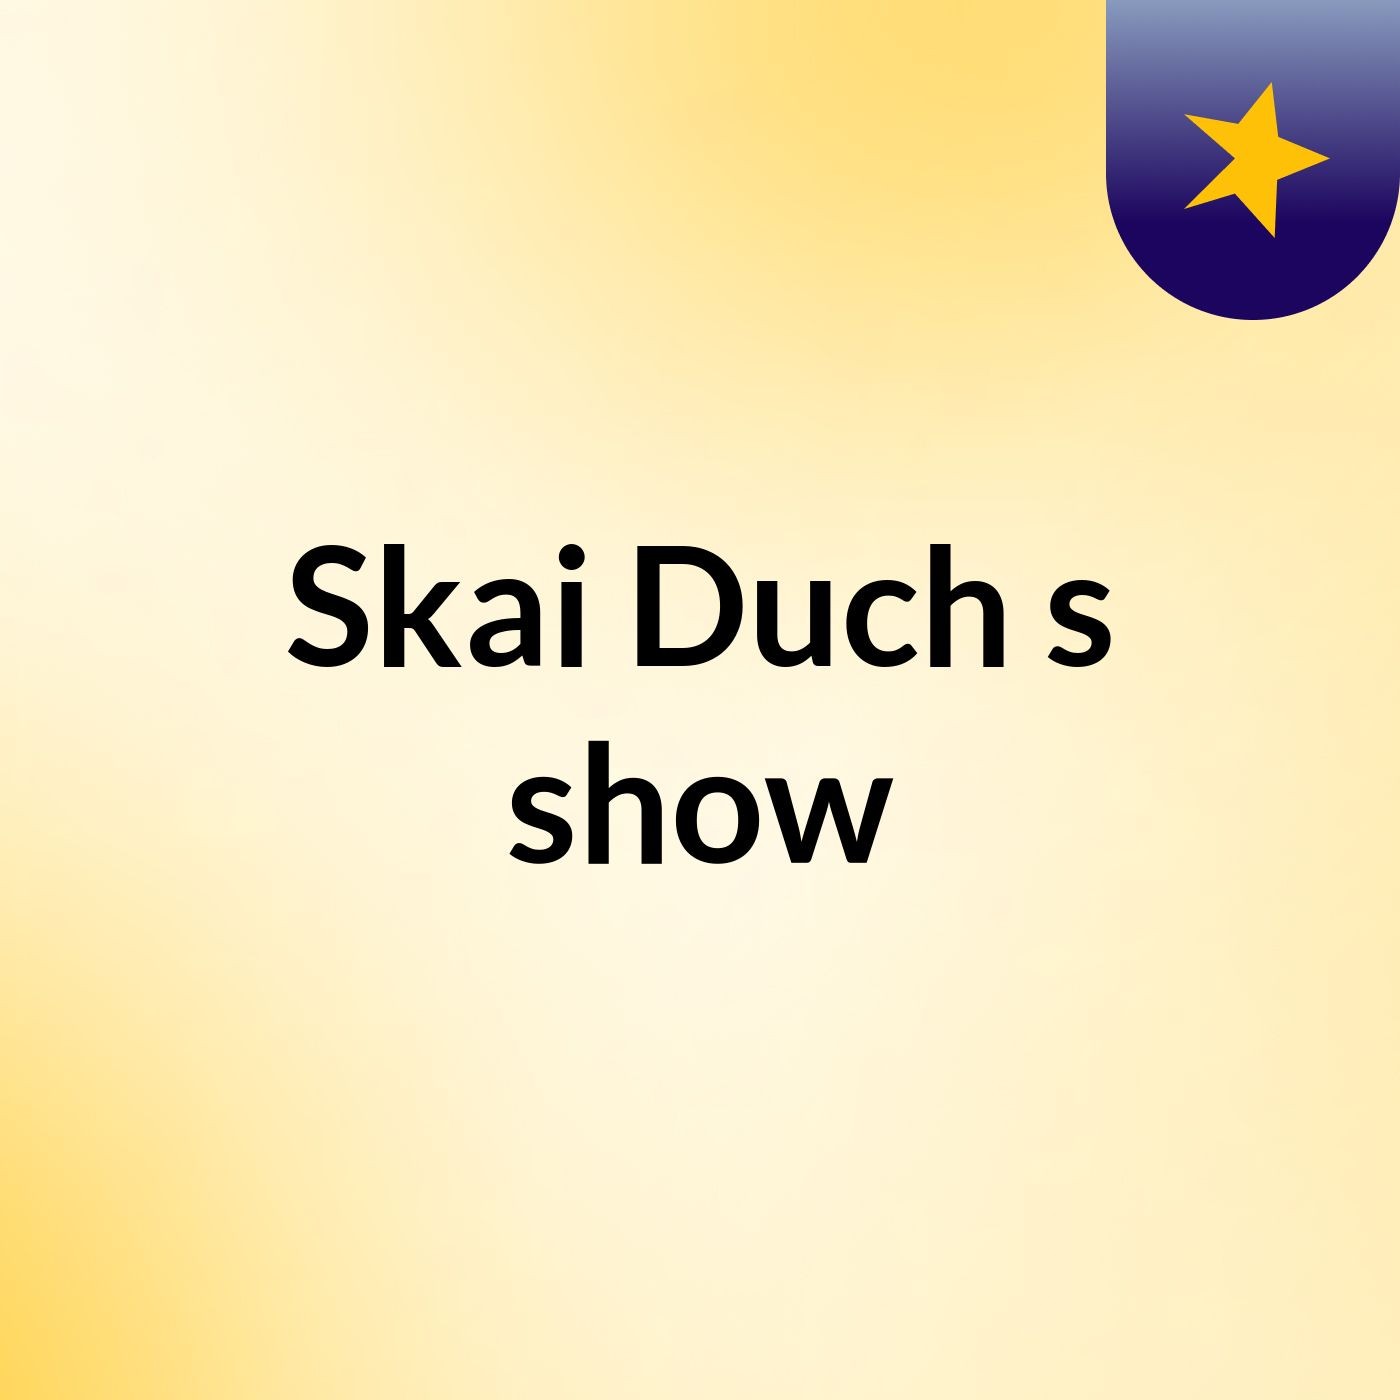 Skai Duch's show